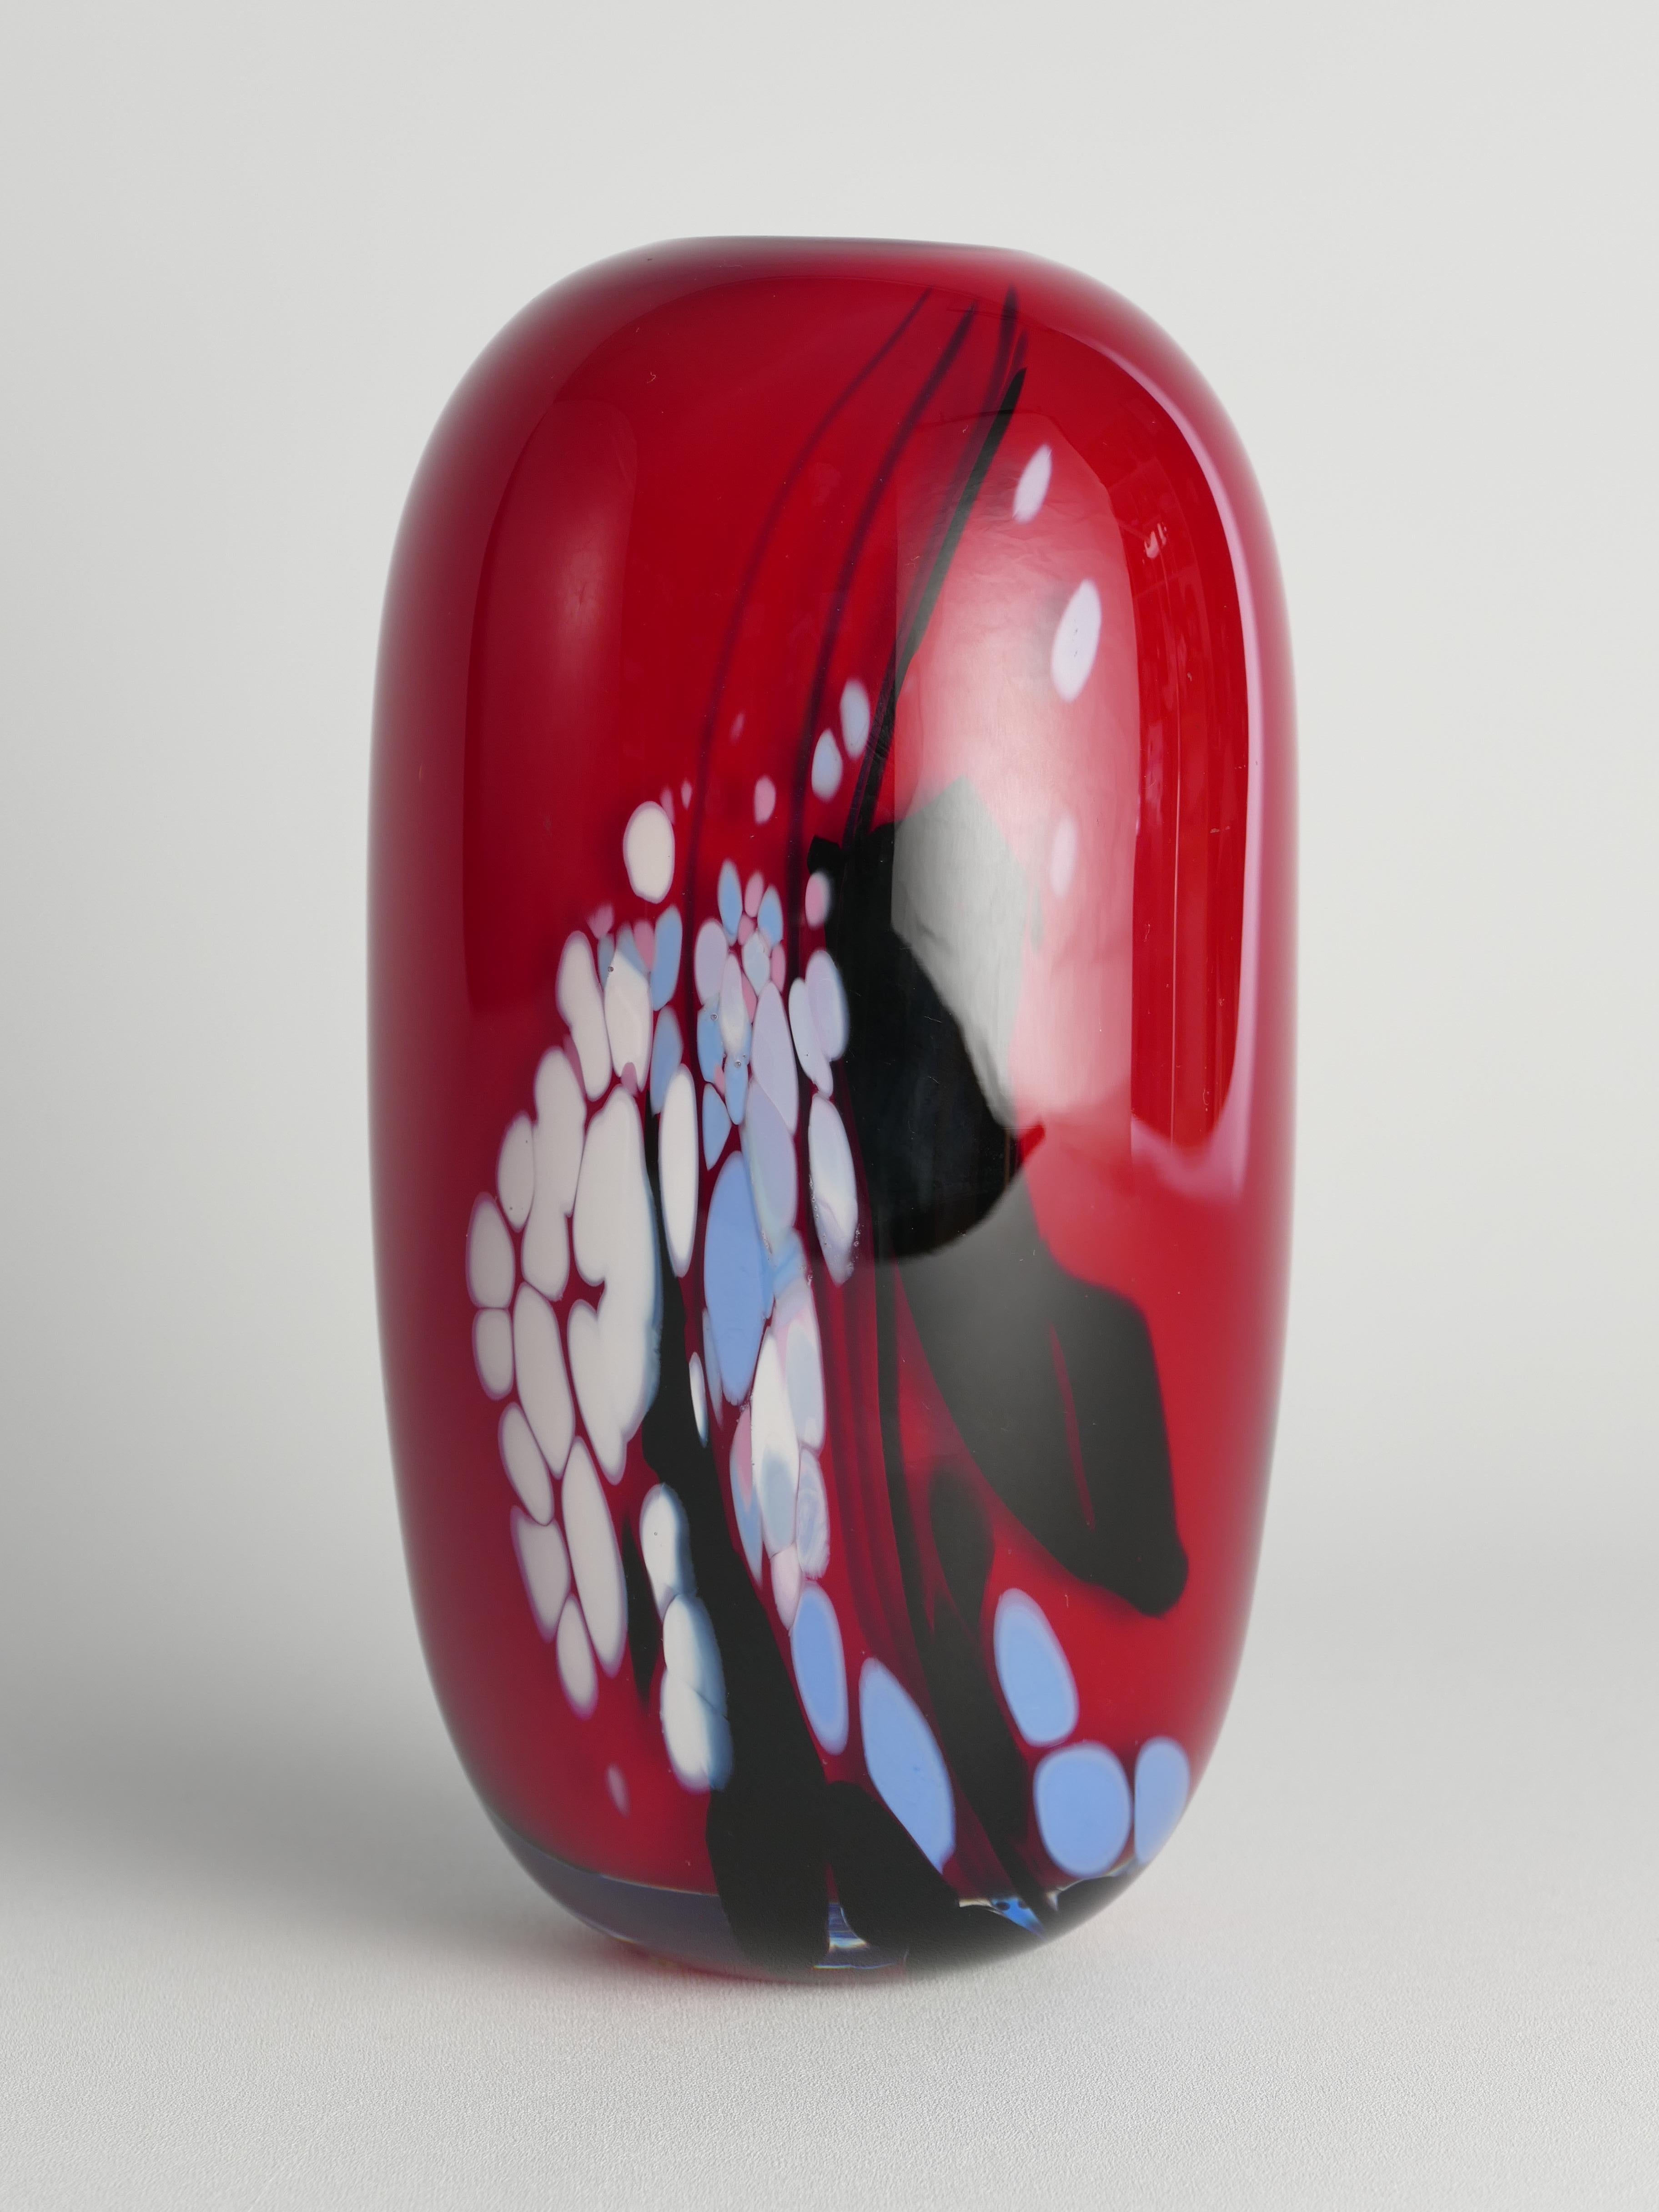 Diese schwere, elegante und farbenfrohe Vase aus Kunstglas wurde 1990 von dem Glasmeister Mikael Axenbrant hergestellt. Glänzend rot wie eine zarte Kirsche mit blauen, weißen und schwarzen Strichen und Punkten.

Eingraviert: 